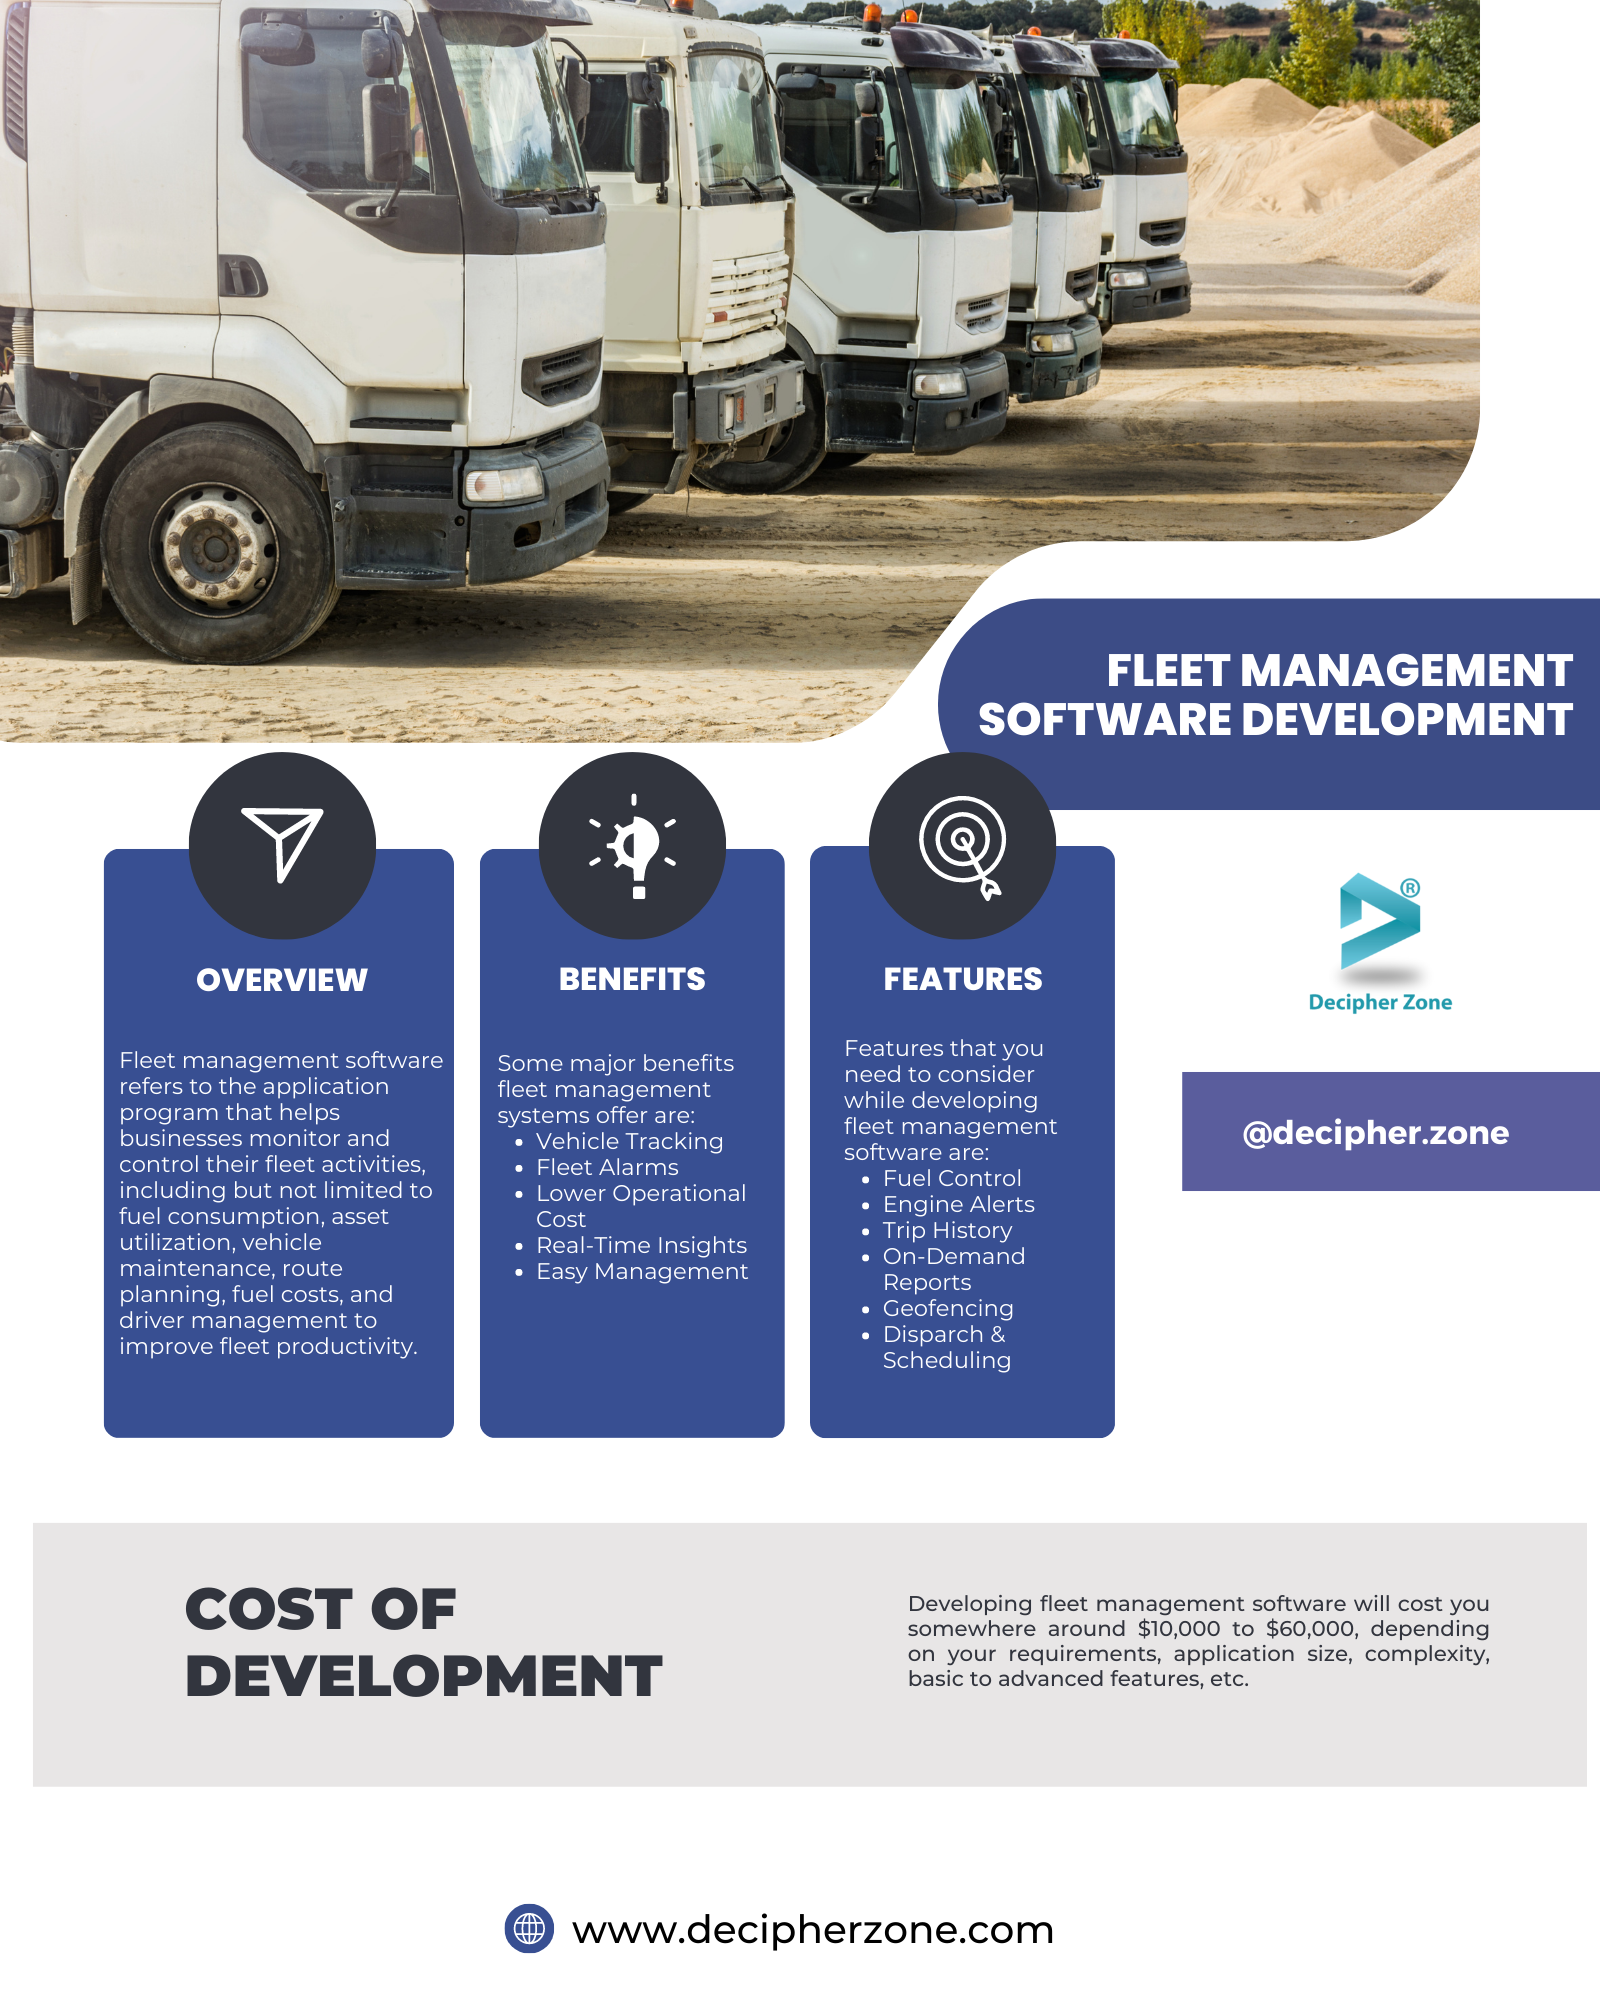 Fleet Management Software Development